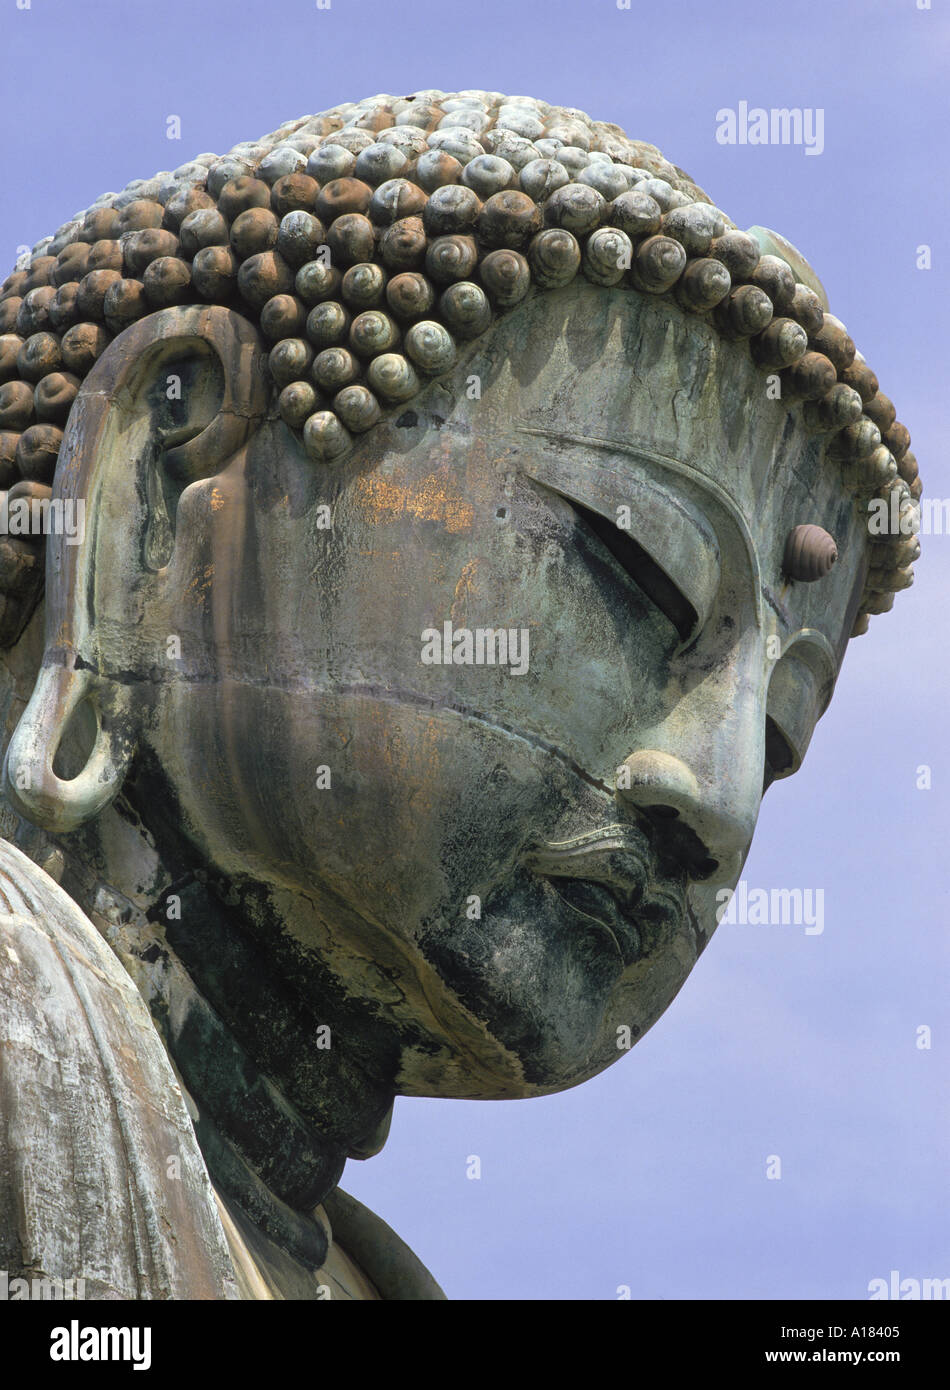 Nahaufnahme des Kopfes des großen Buddha in Kamakura in der Präfektur Kanagawa in Japan Asien N Blythe Stockfoto